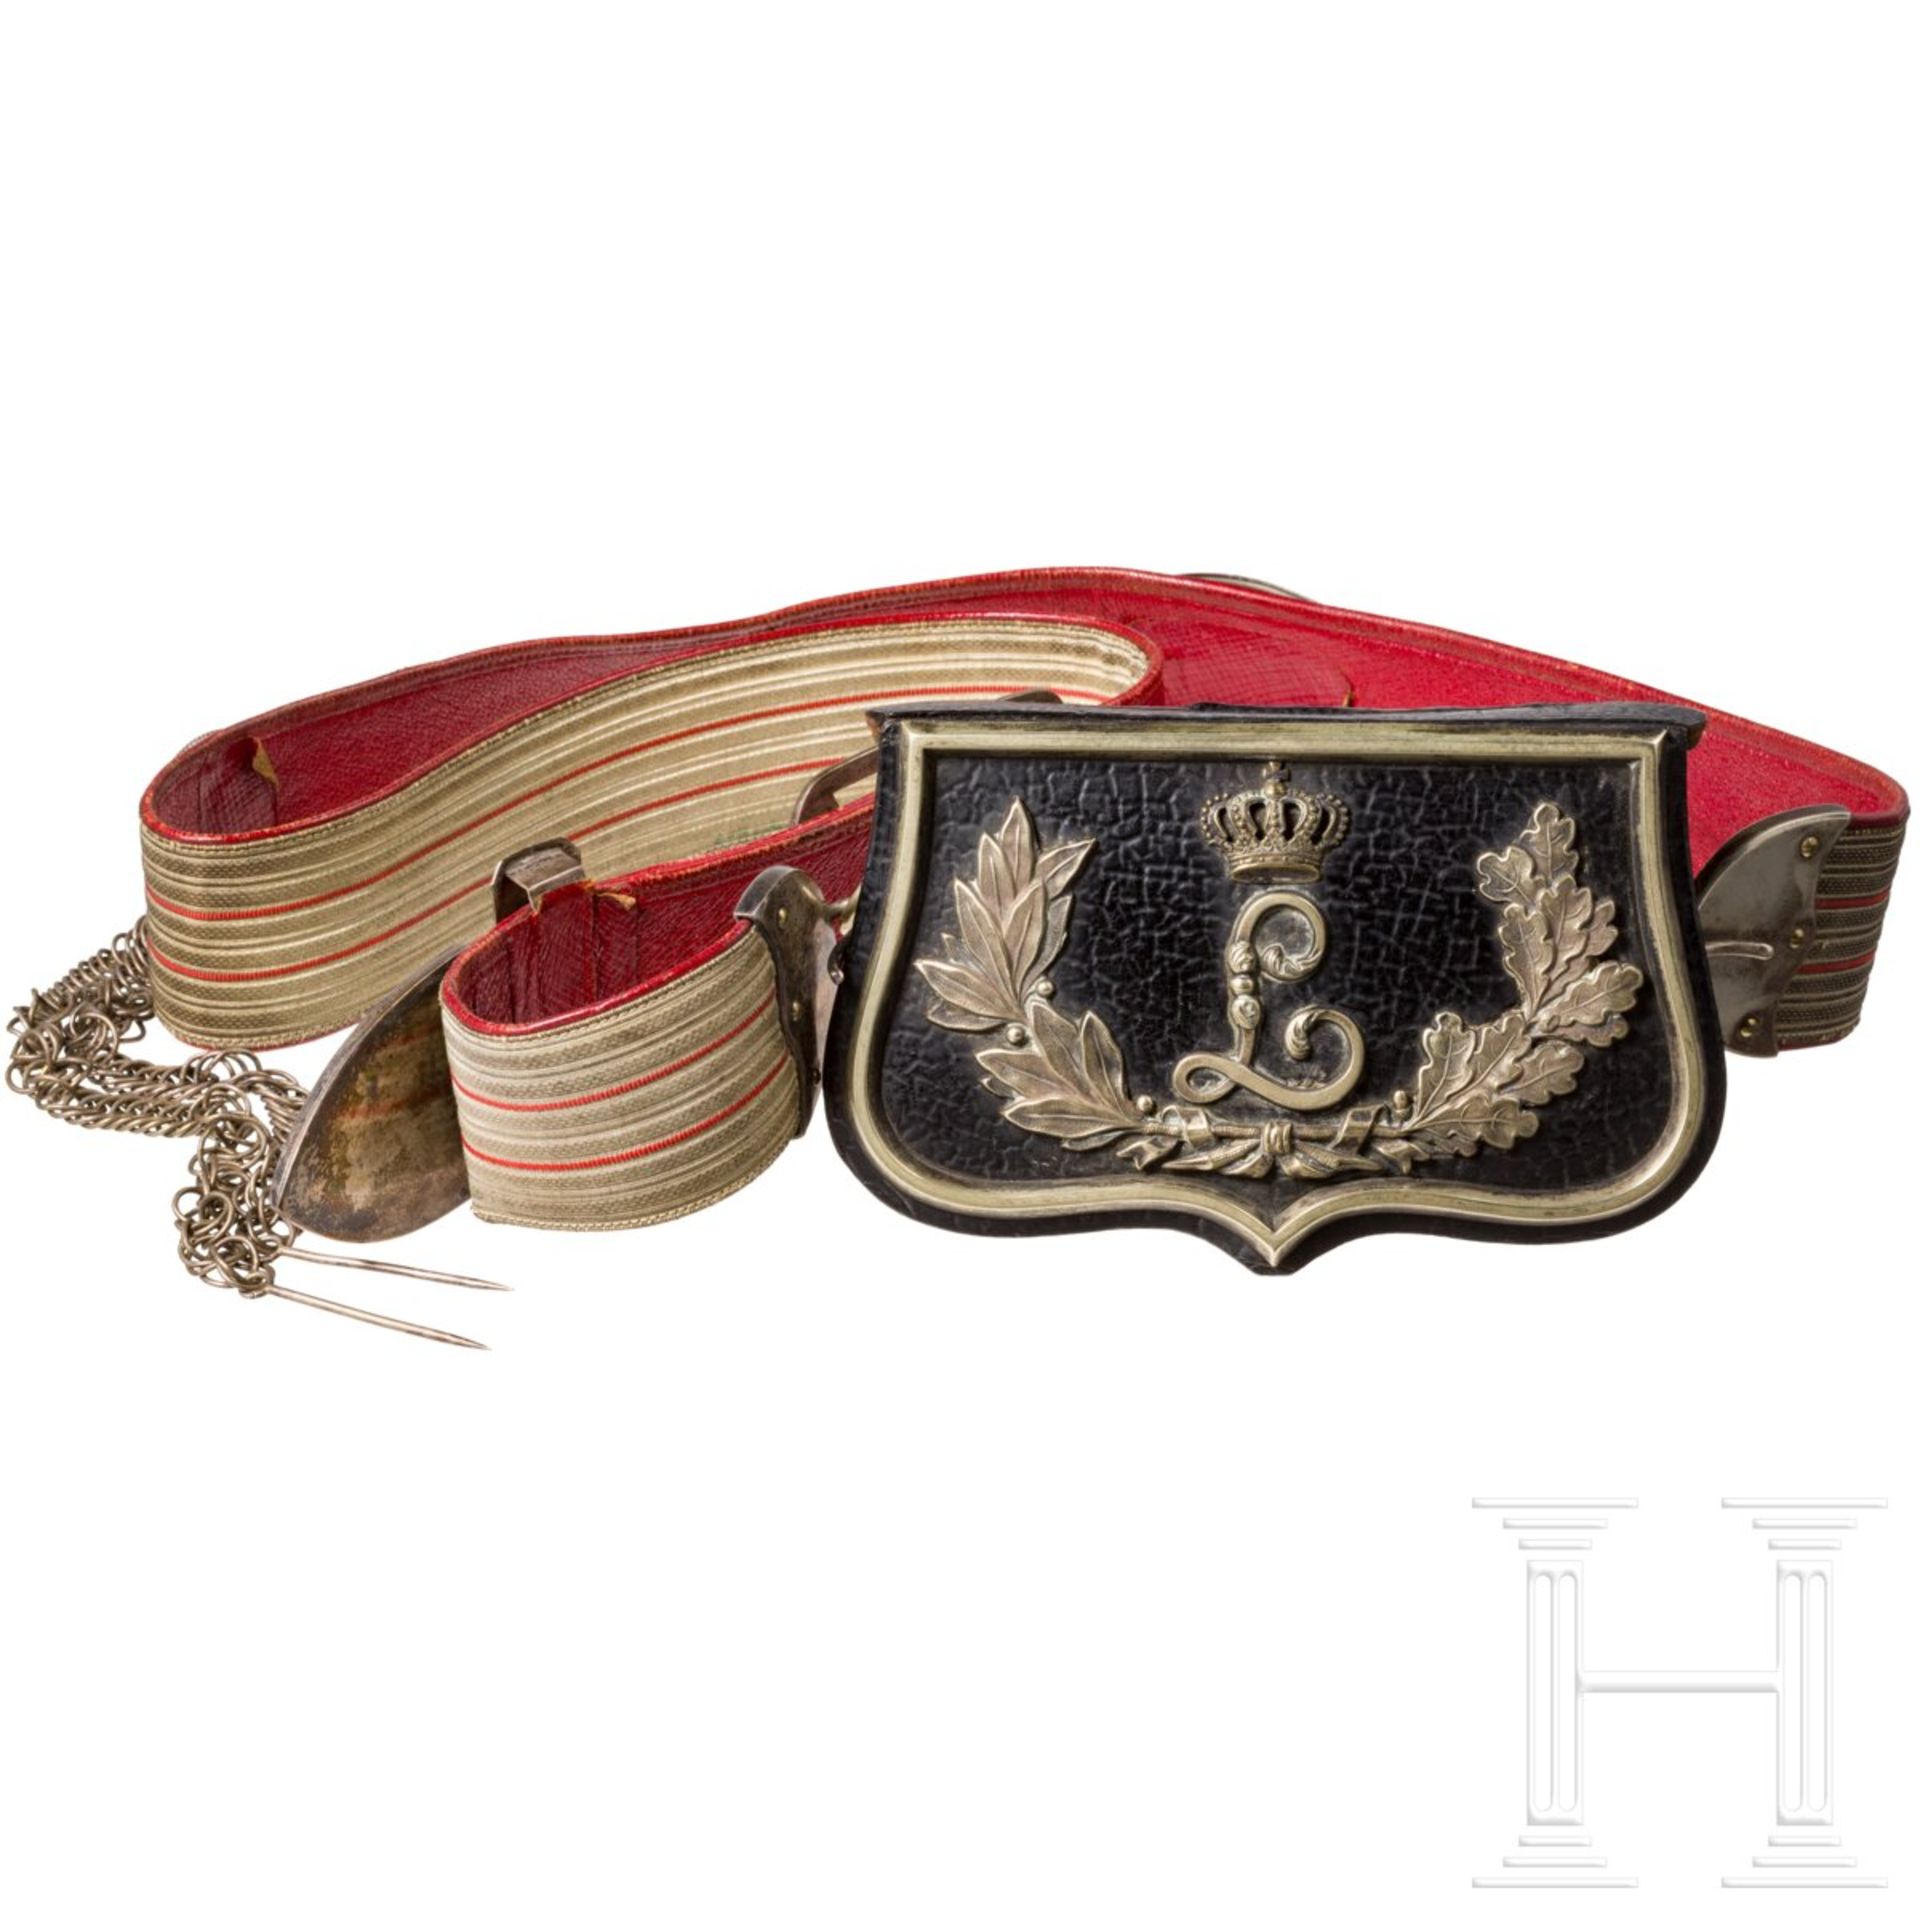 Kartusche und Bandelier für Offiziere der hessischen Dragoner-Regimenter Nr. 23 und 24, um 1900